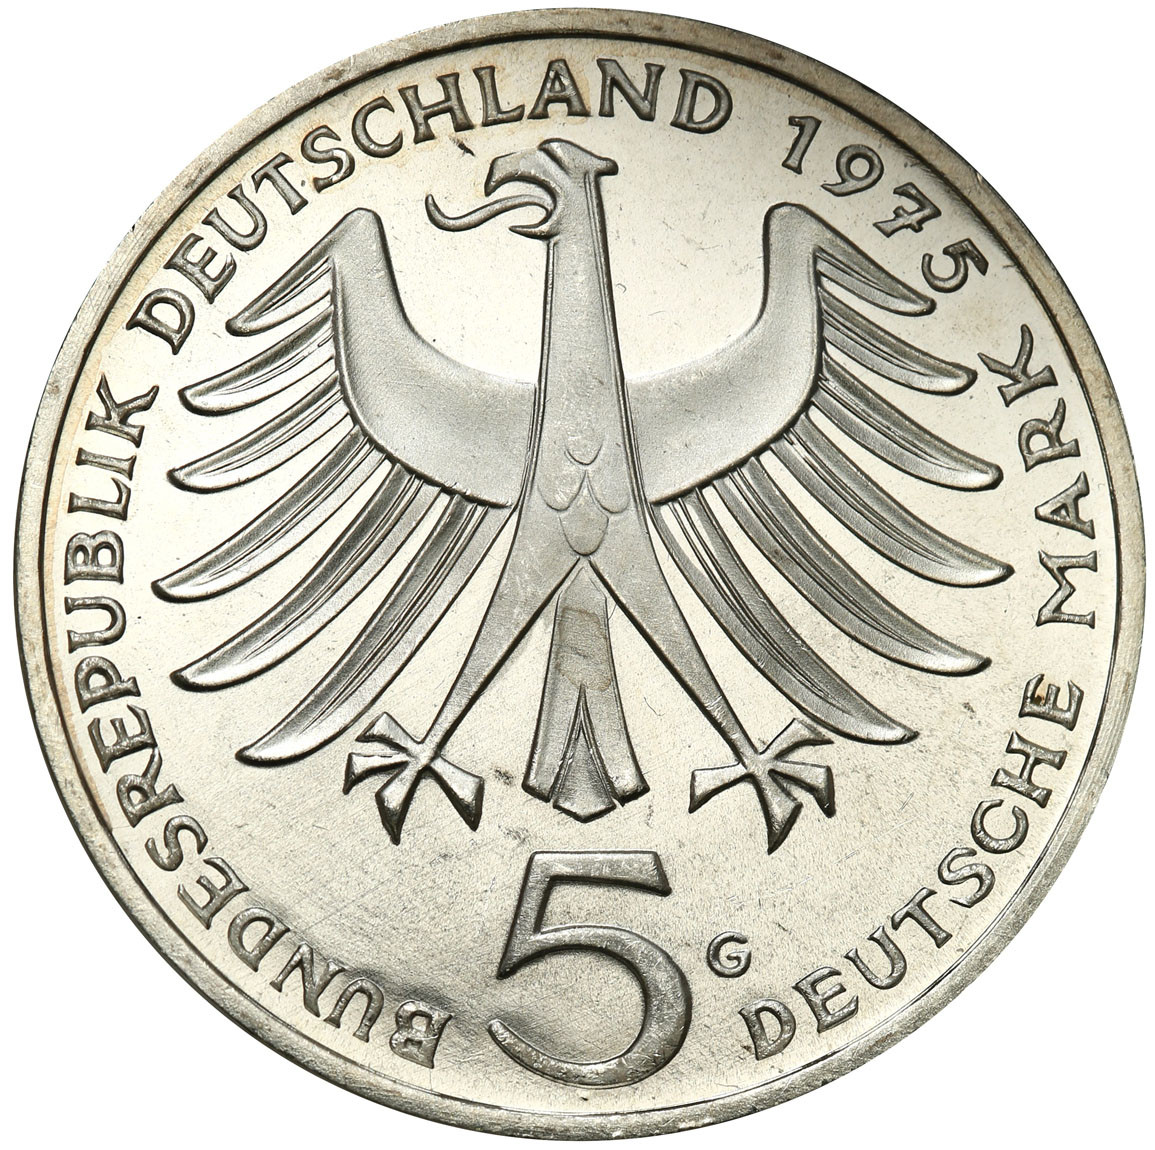 Niemcy, RFN. 5 marek 1975, Karlsruhe, Albert Schweitzer